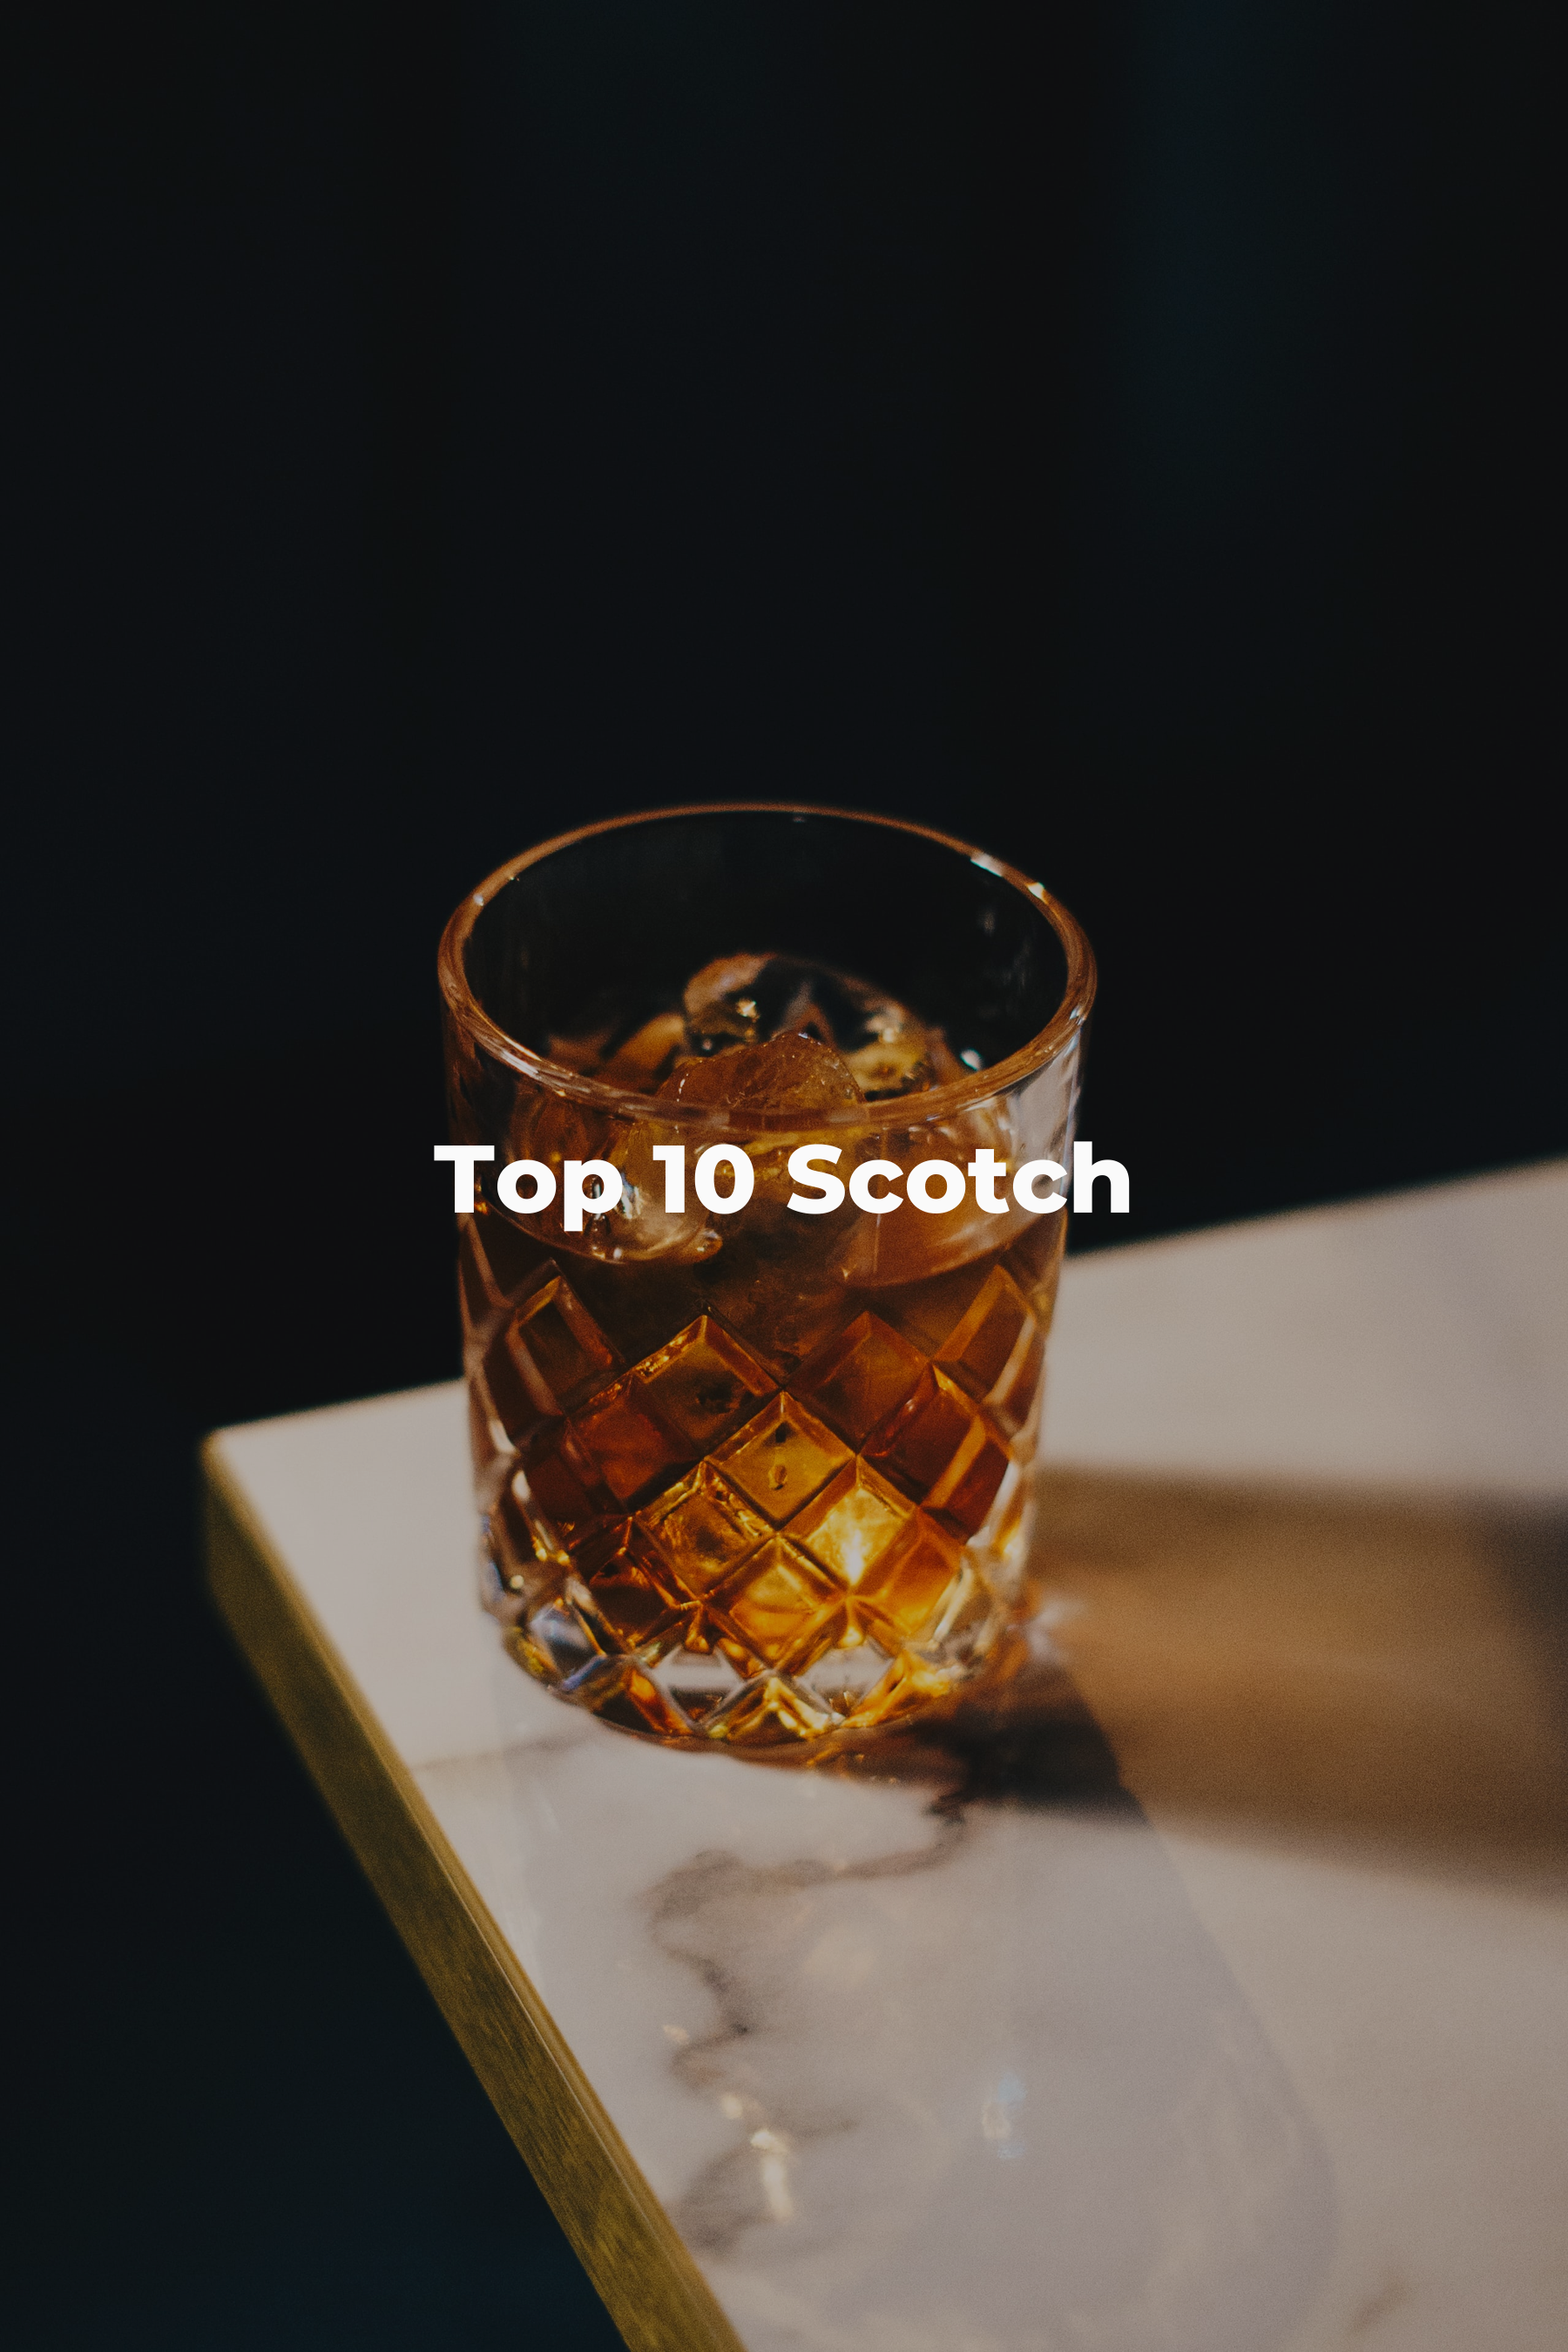 Top 10 Scotch